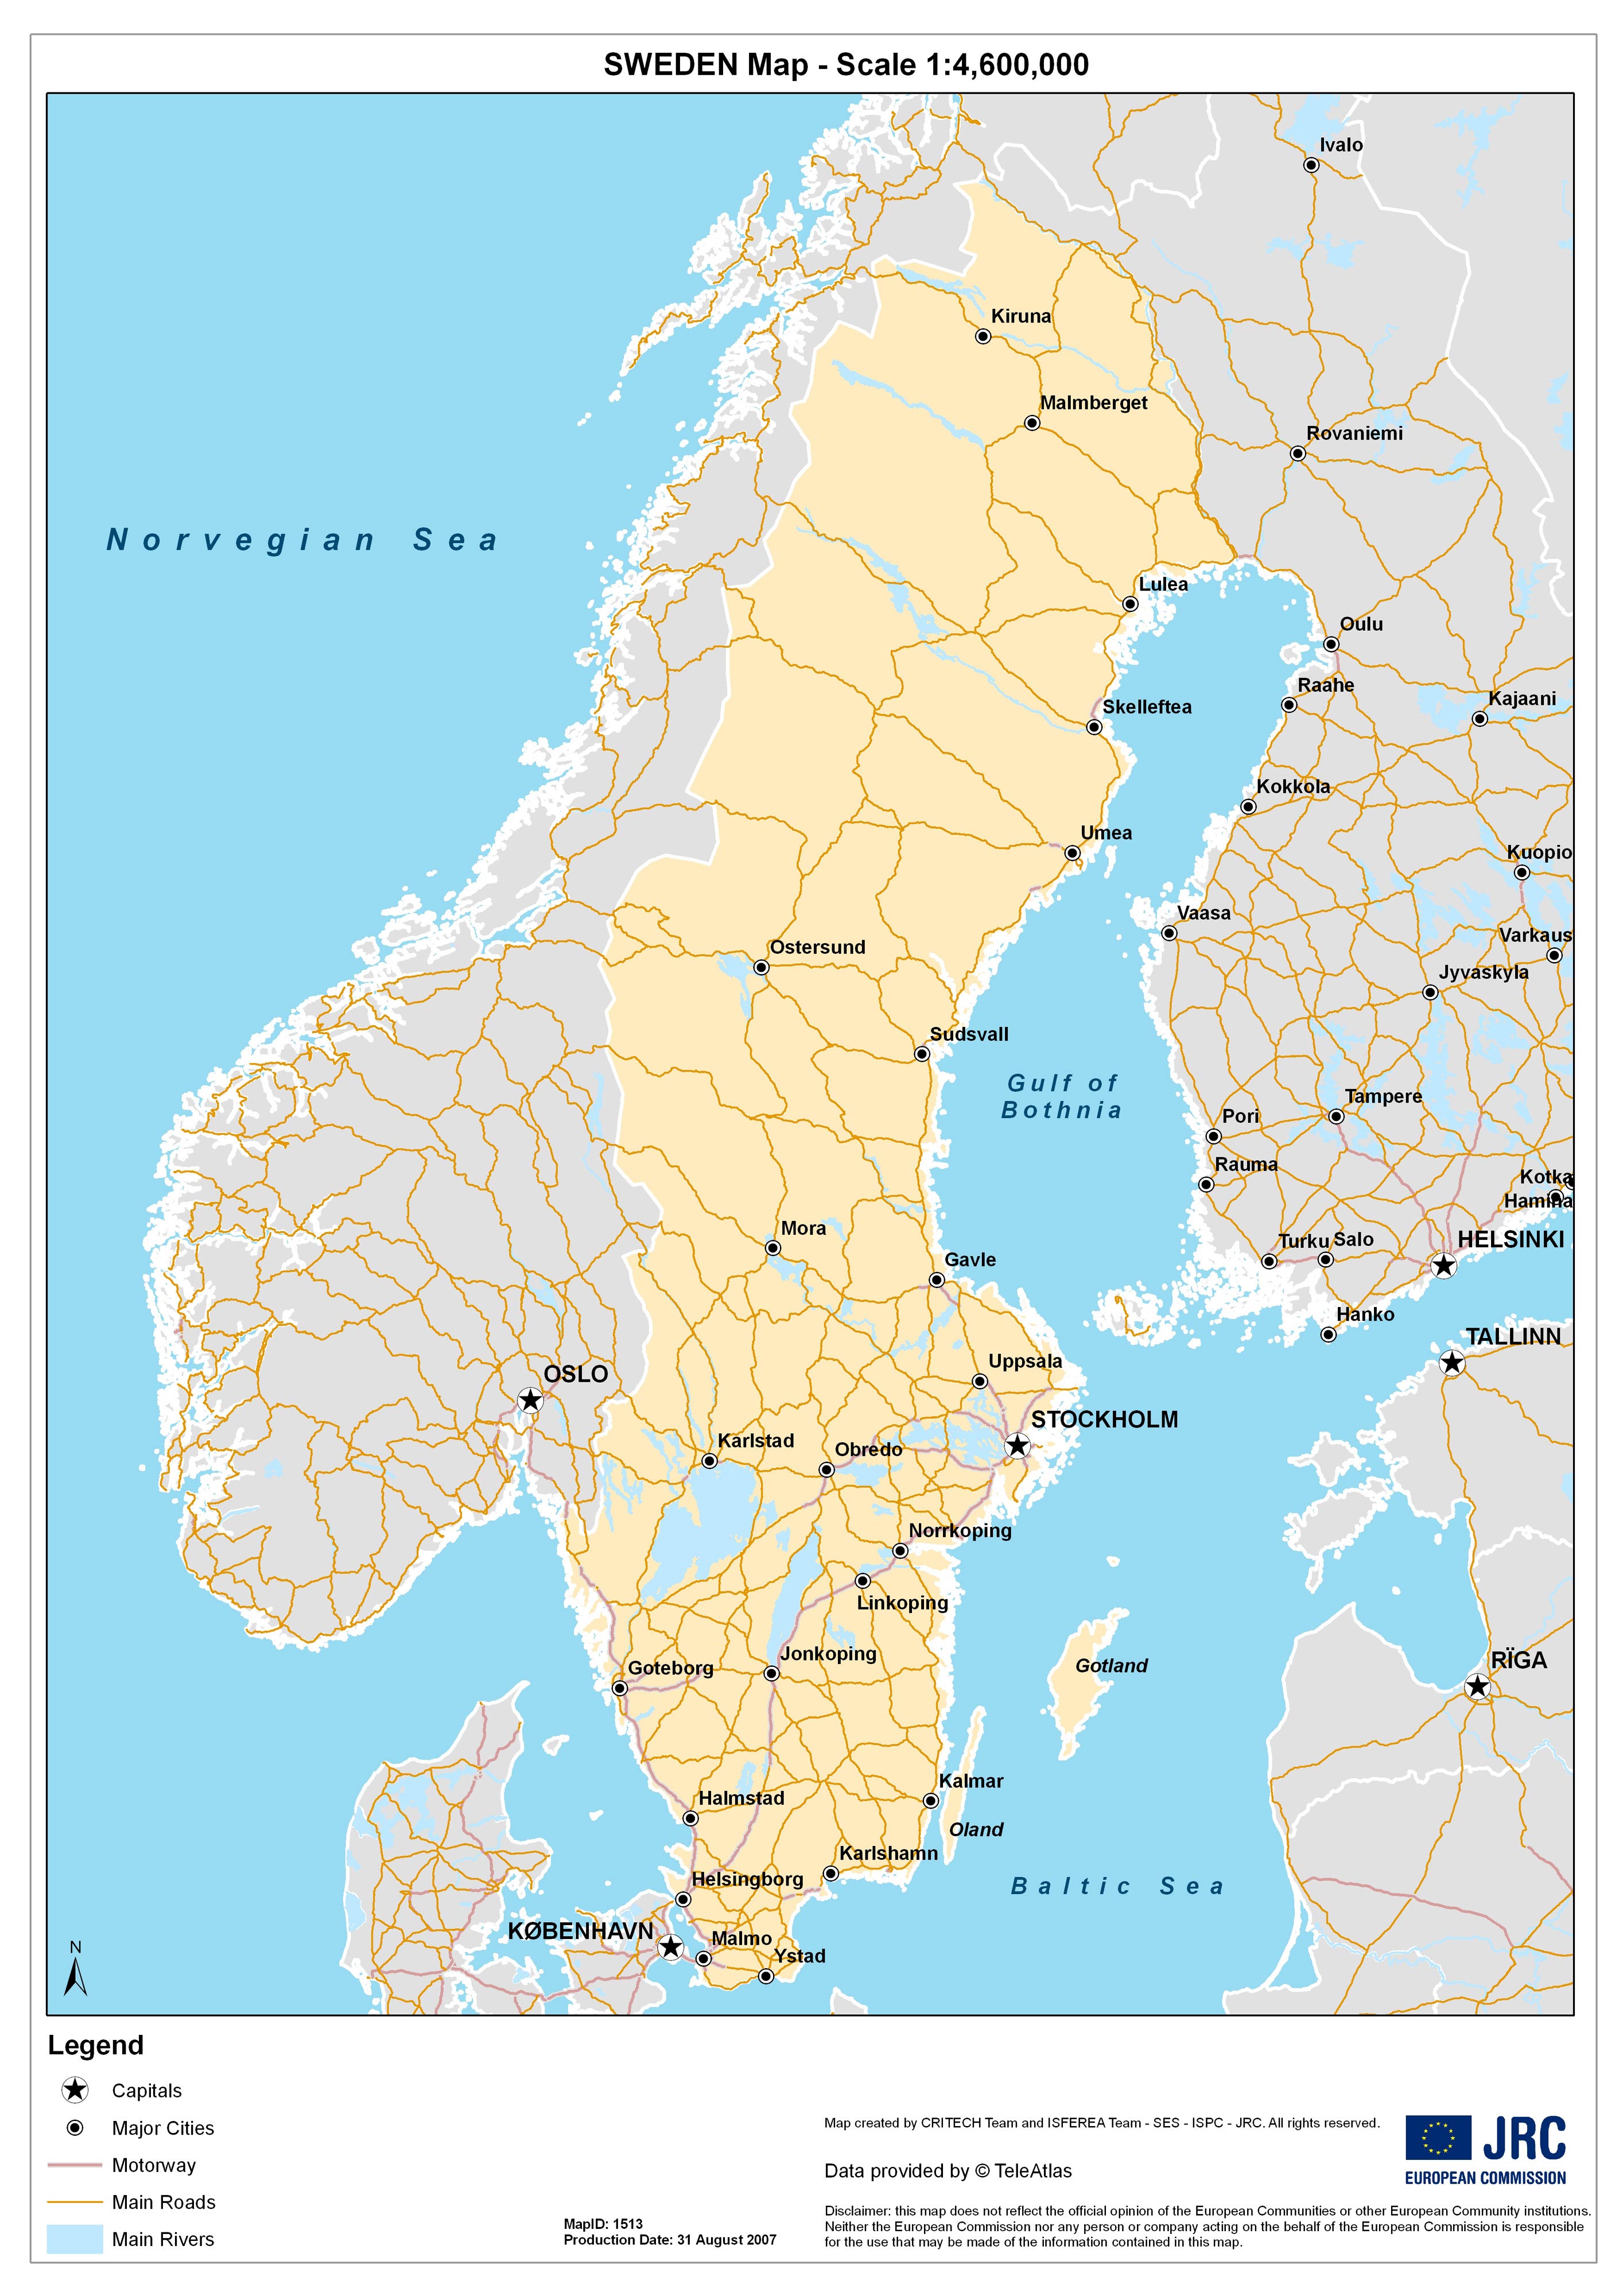 desarrollo de equipaje A escala nacional ciudades de suecia mapa con ...